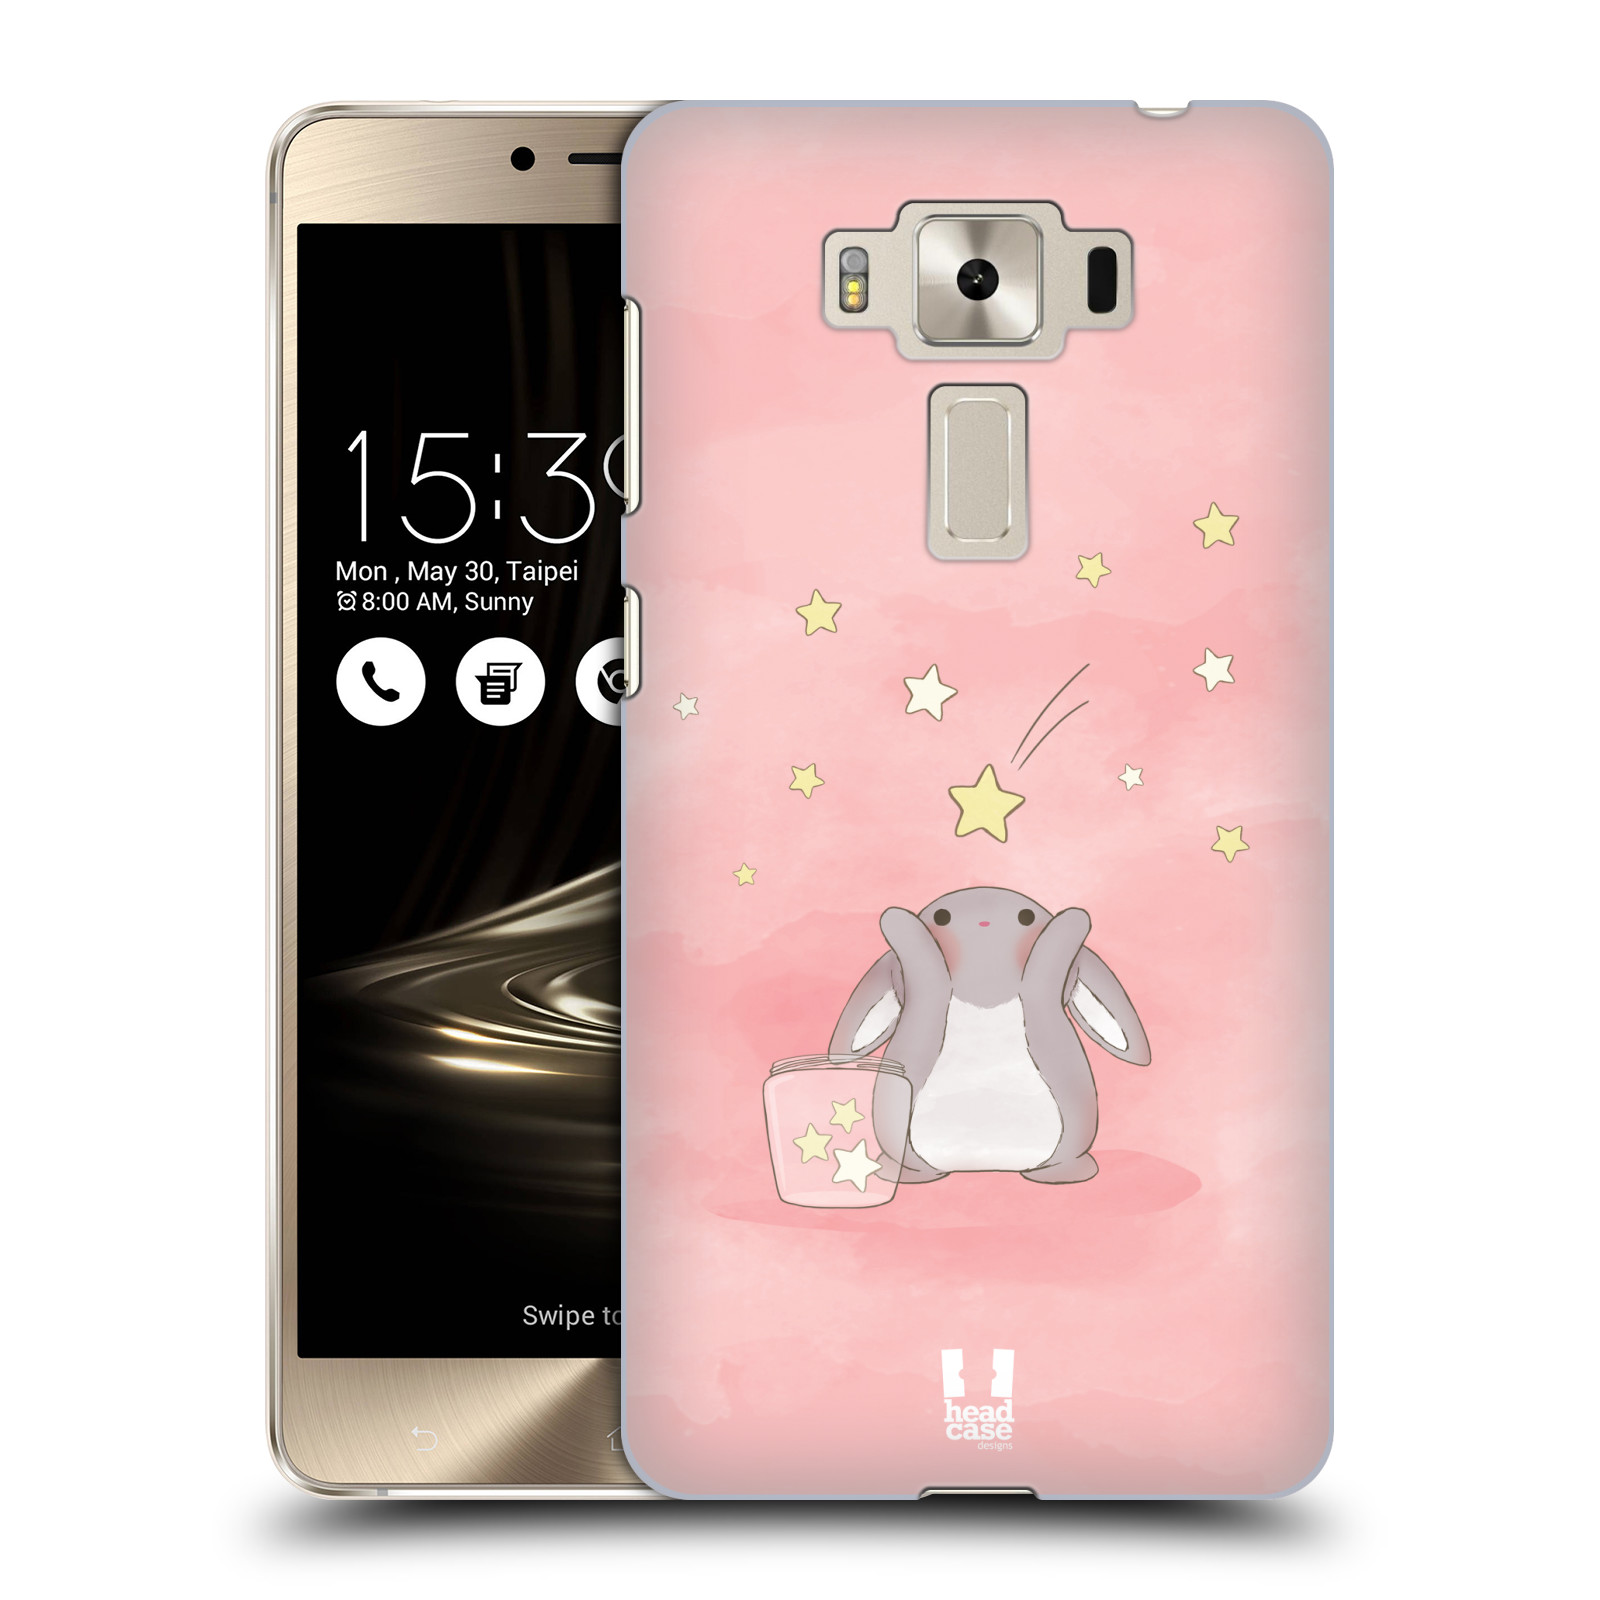 HEAD CASE plastový obal na mobil Asus Zenfone 3 DELUXE ZS550KL vzor králíček a hvězdy růžová